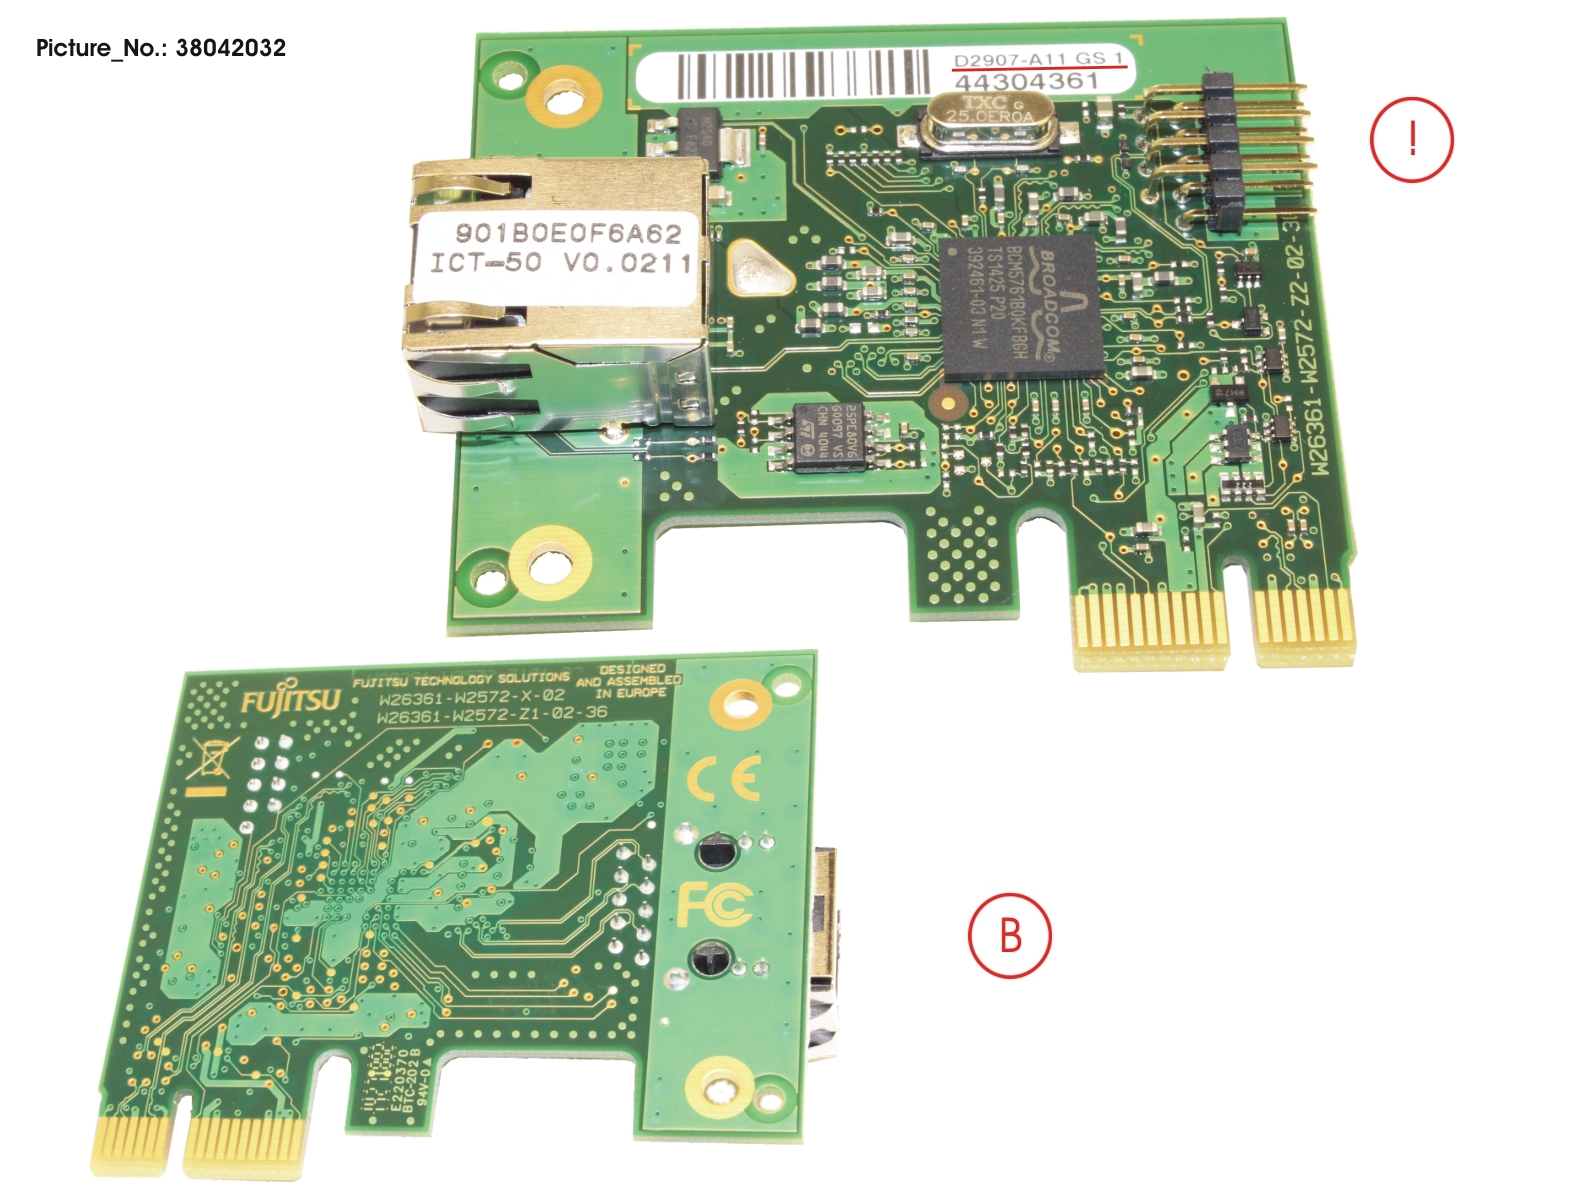 DASH LAN CARD, GE PCIE X1, DS